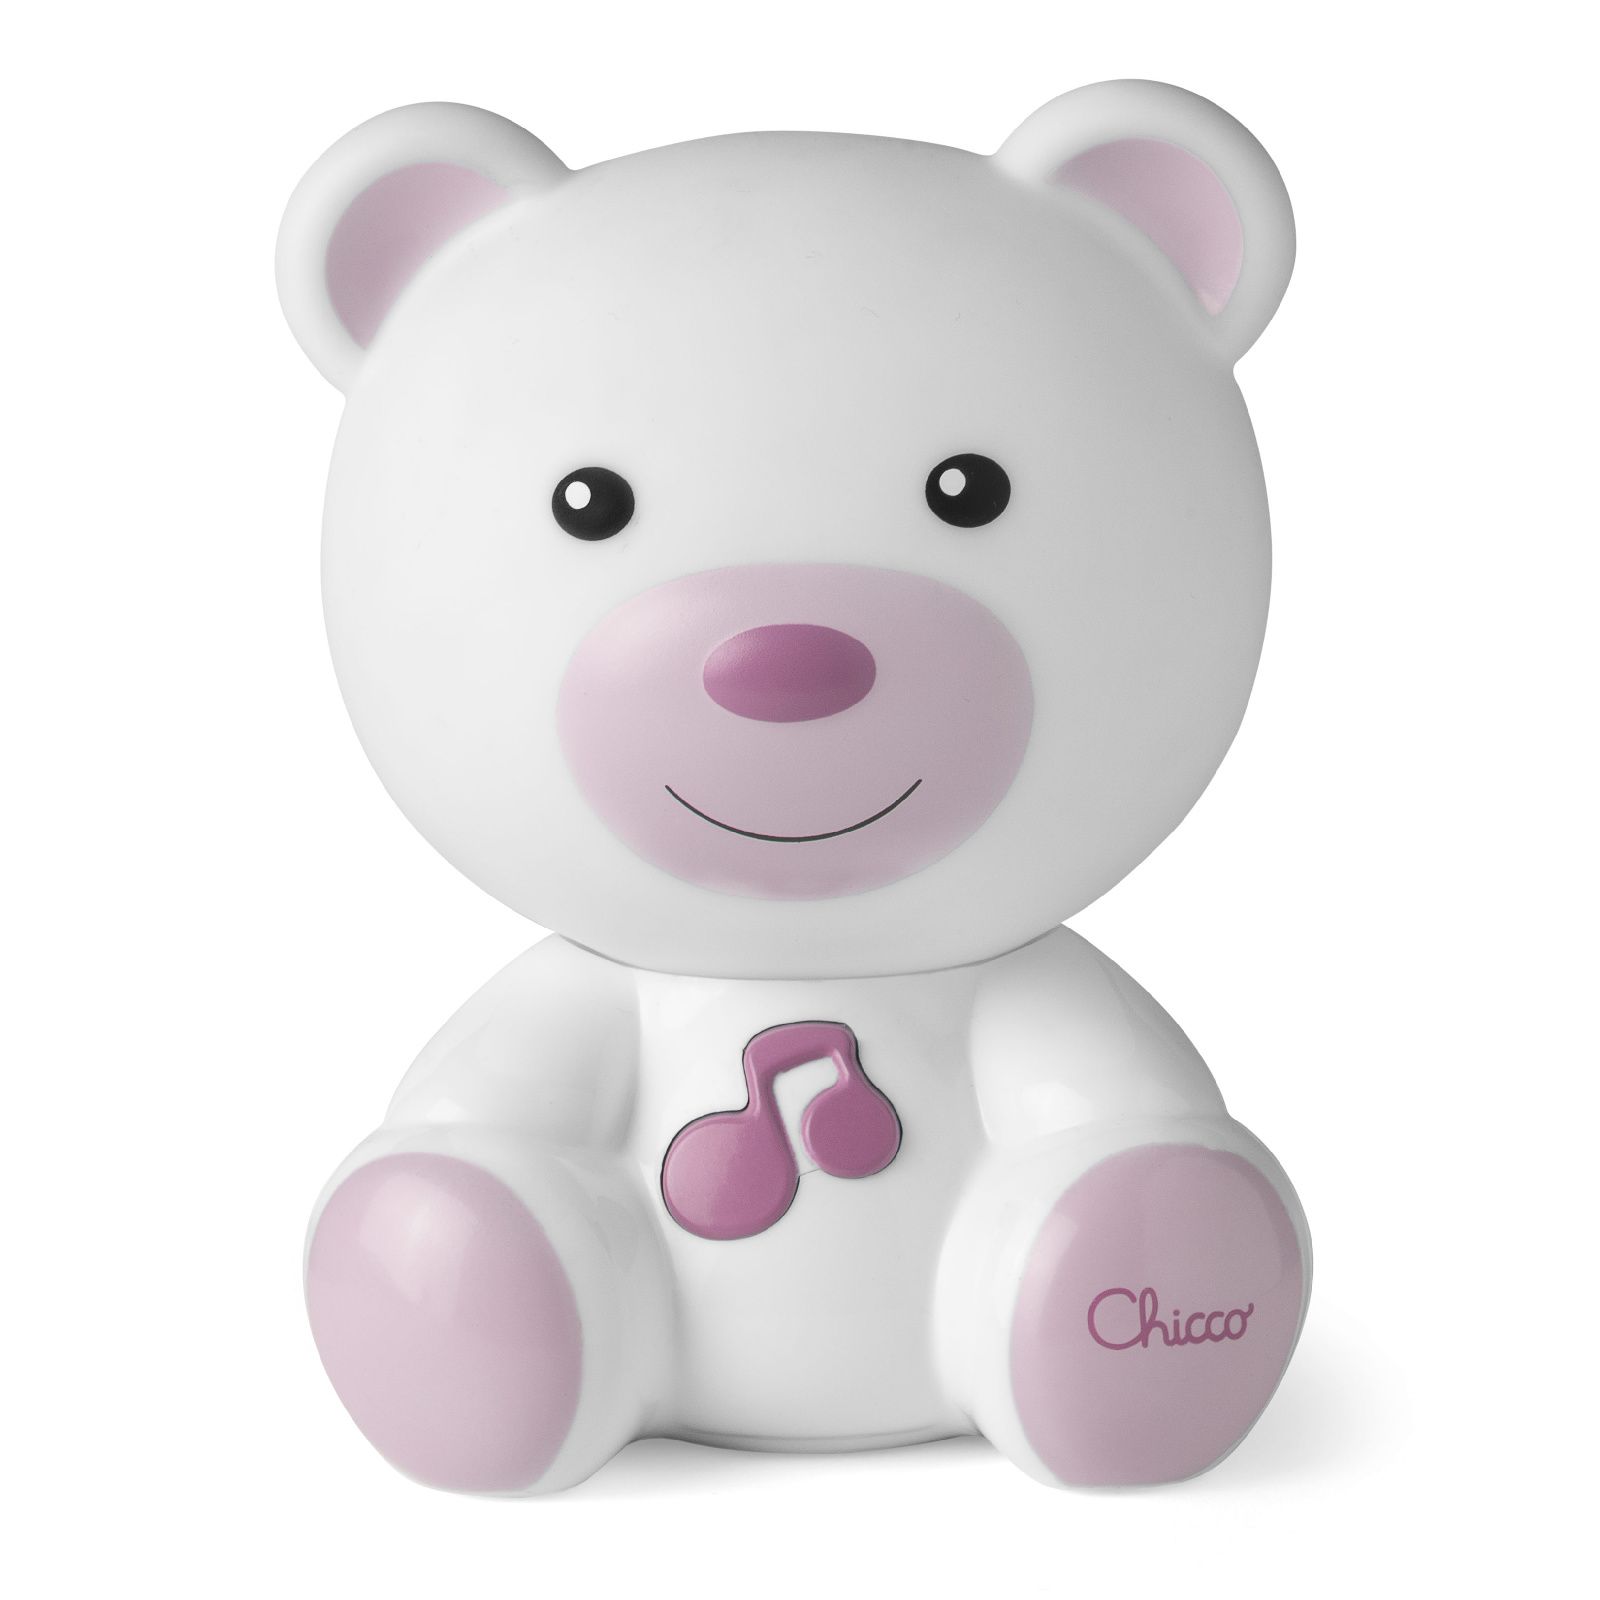 Ночник Медвежонок Chicco Dreamlight розовый мягкая игрушка медвежонок с бусинками 30 см розовый